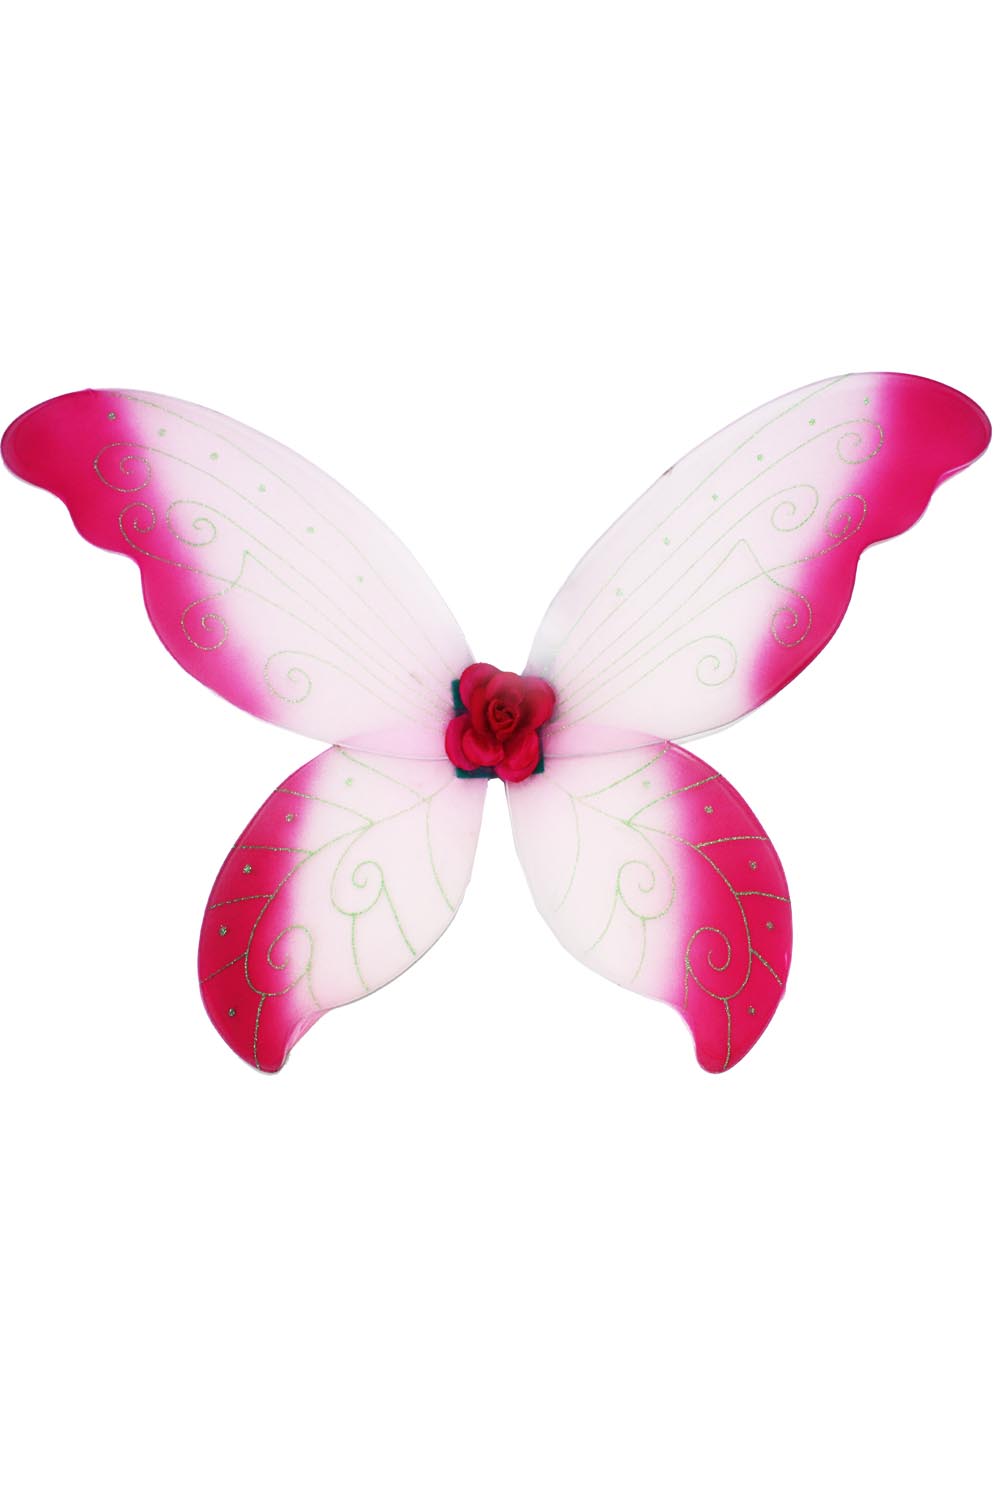 Ali farfalla grandi rosa-fuxia